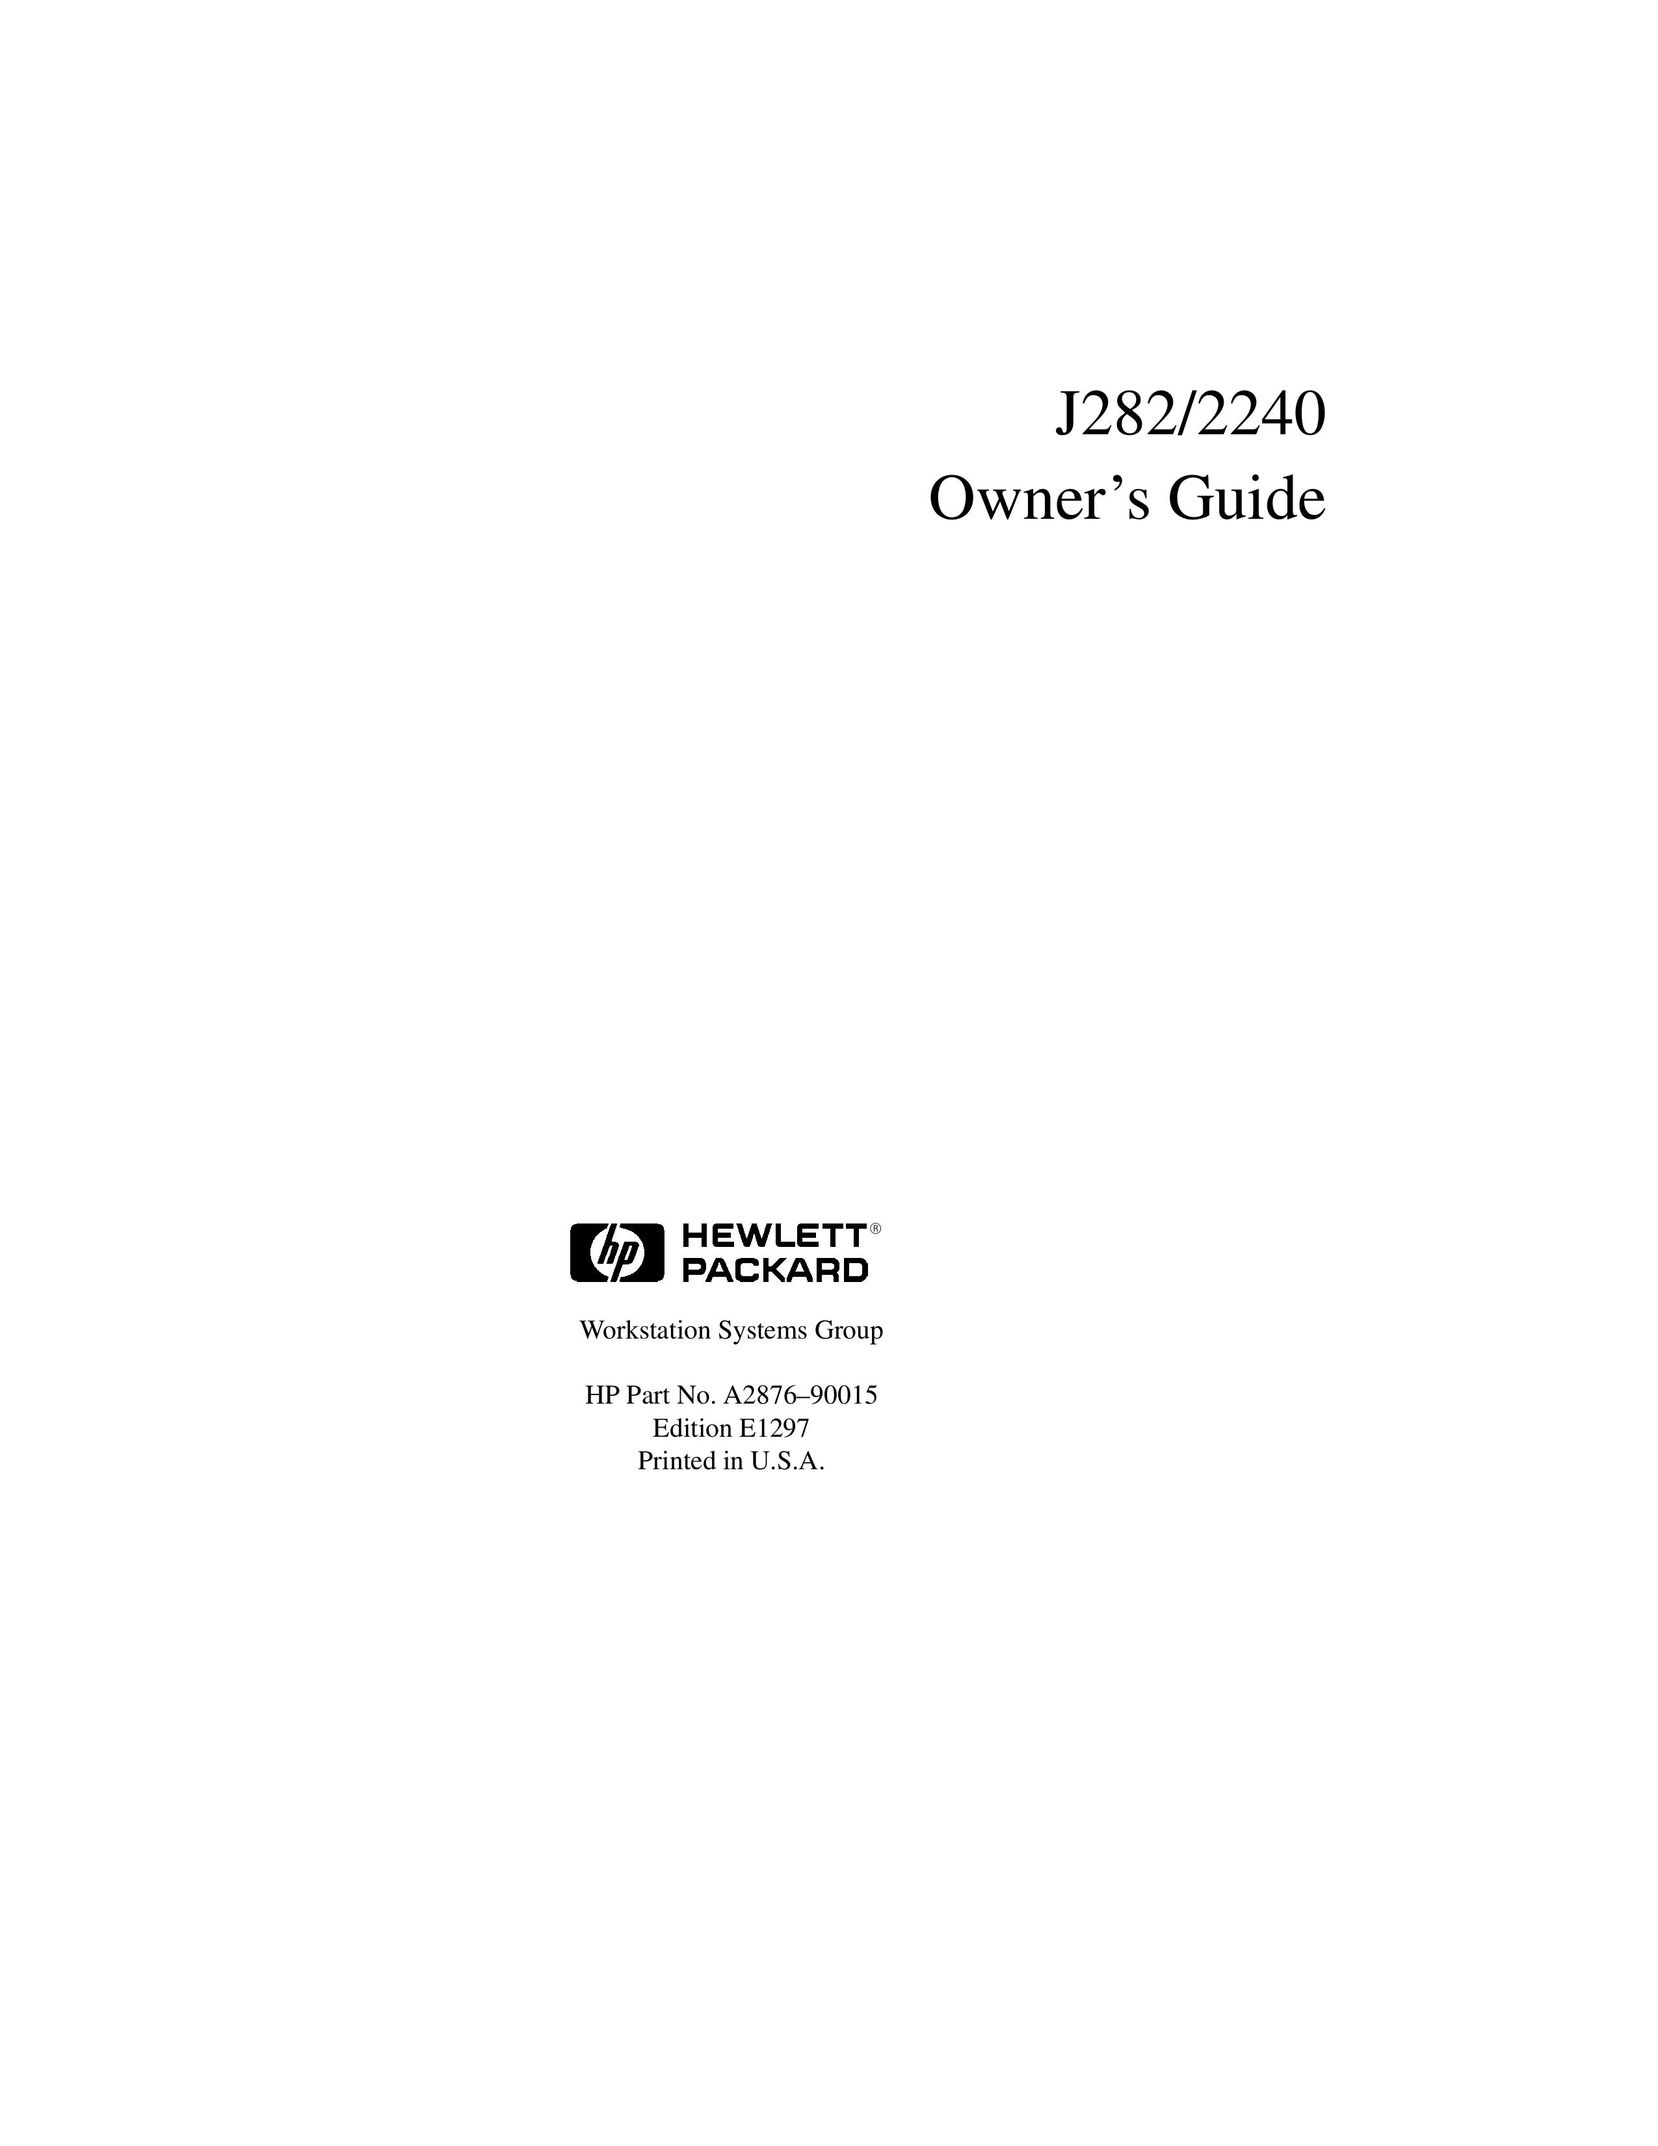 HP (Hewlett-Packard) 2240 Network Card User Manual